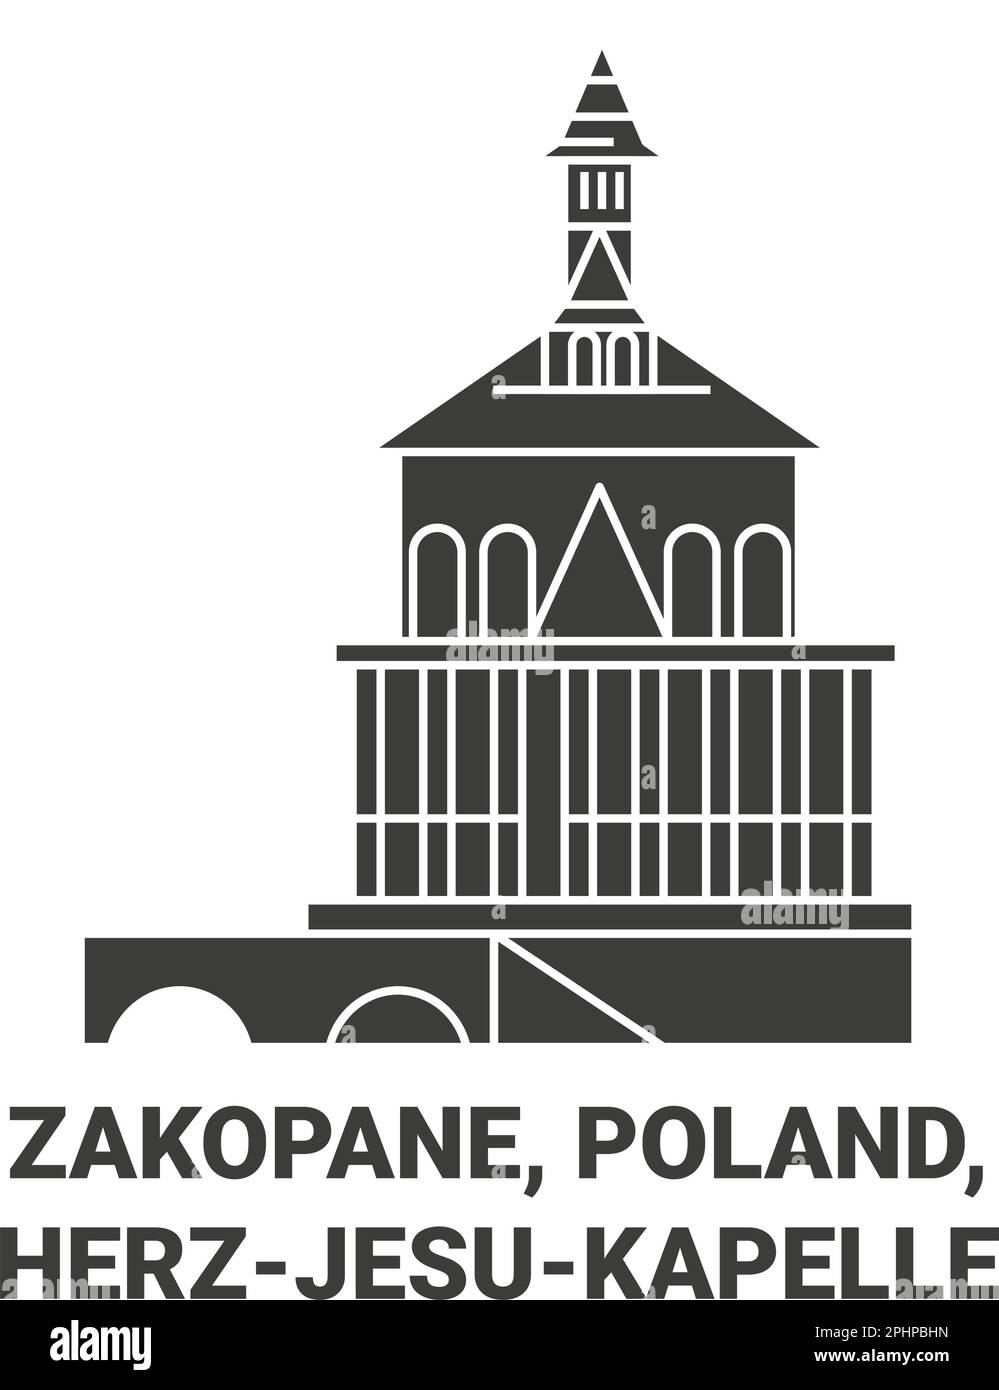 Poland, Zakopane, Herzjesukapelle travel landmark vector illustration Stock Vector